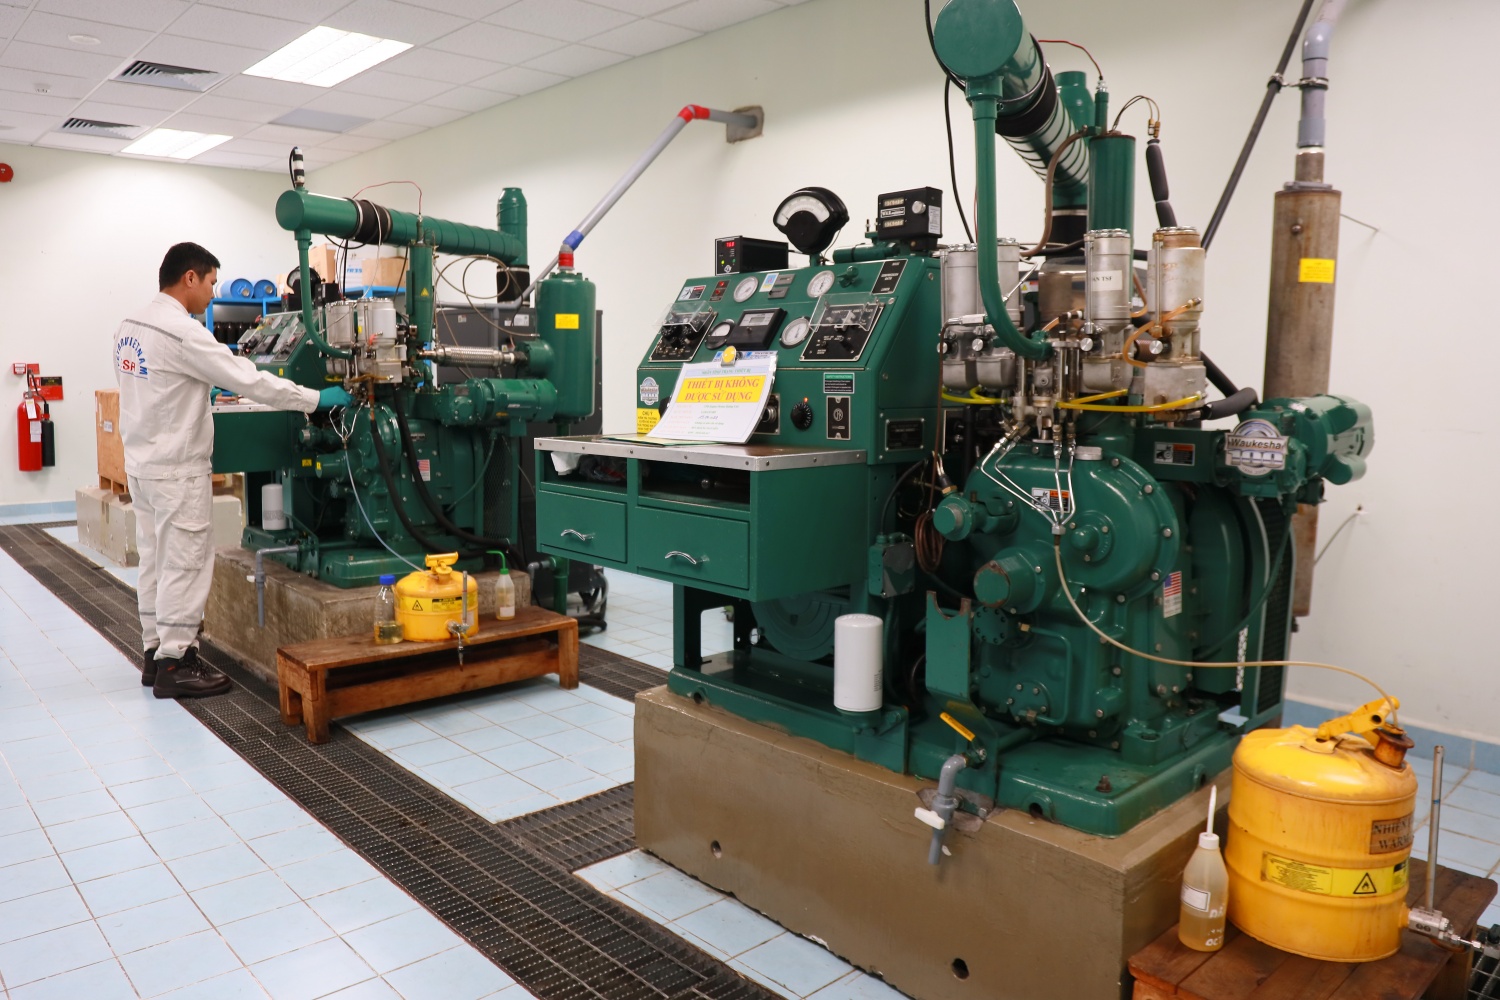 Tại Phòng Thí nghiệm của NMLD Dung Quất có khoảng 300 thiết bị chính và thiết bị phụ trợ giúp đảm bảo các hoạt động giám định, phân tích được diễn ra liên tục, không gây ảnh hưởng đến hoạt động sản xuất kinh doanh của BSR.